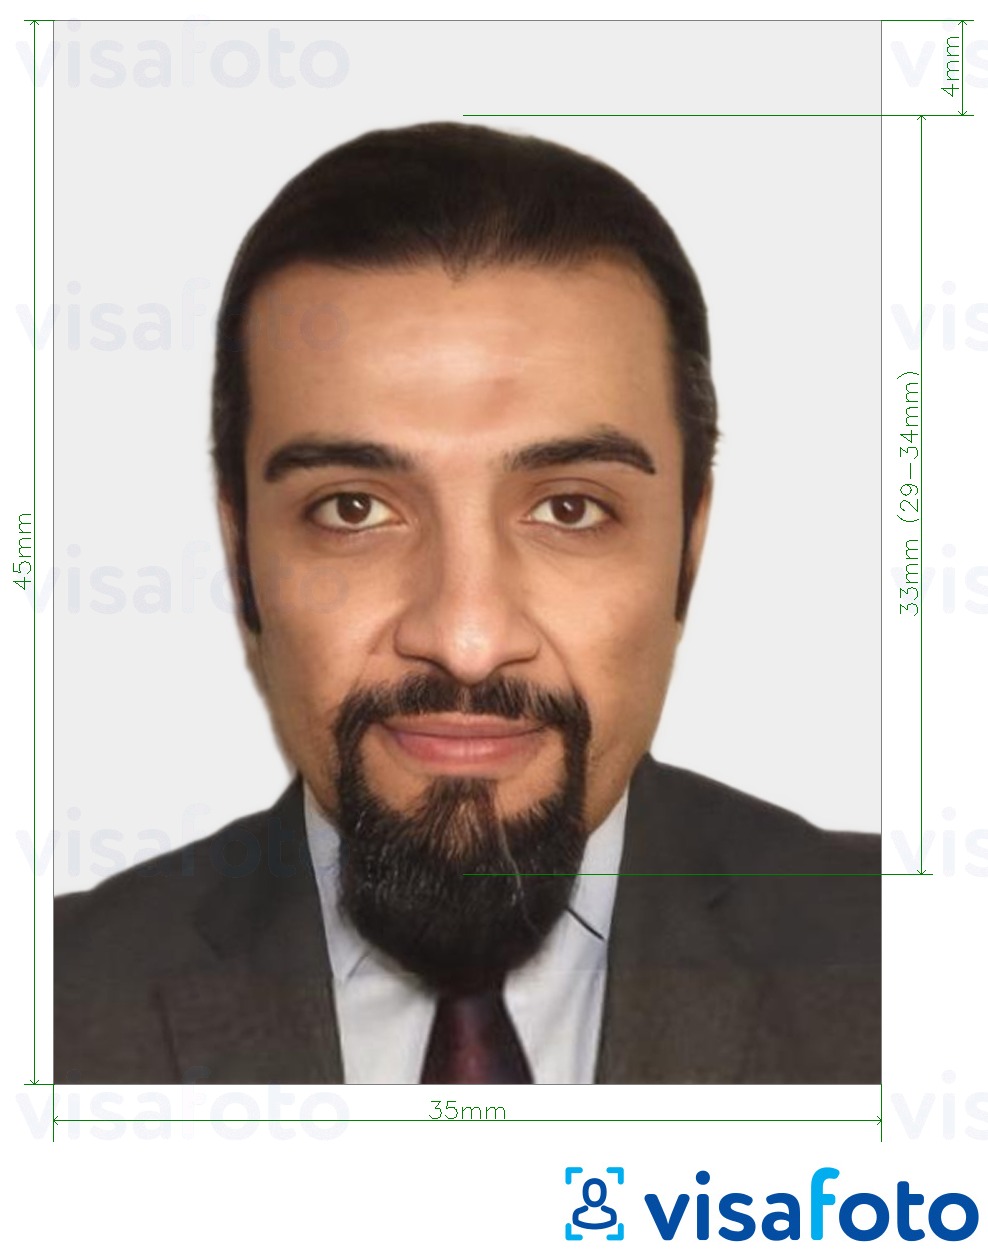 Exemplo de foto para O cartão de identidade nacional em Marrocos 35x45 mm (3,5x4,5 cm) com especificação exata de dimensão